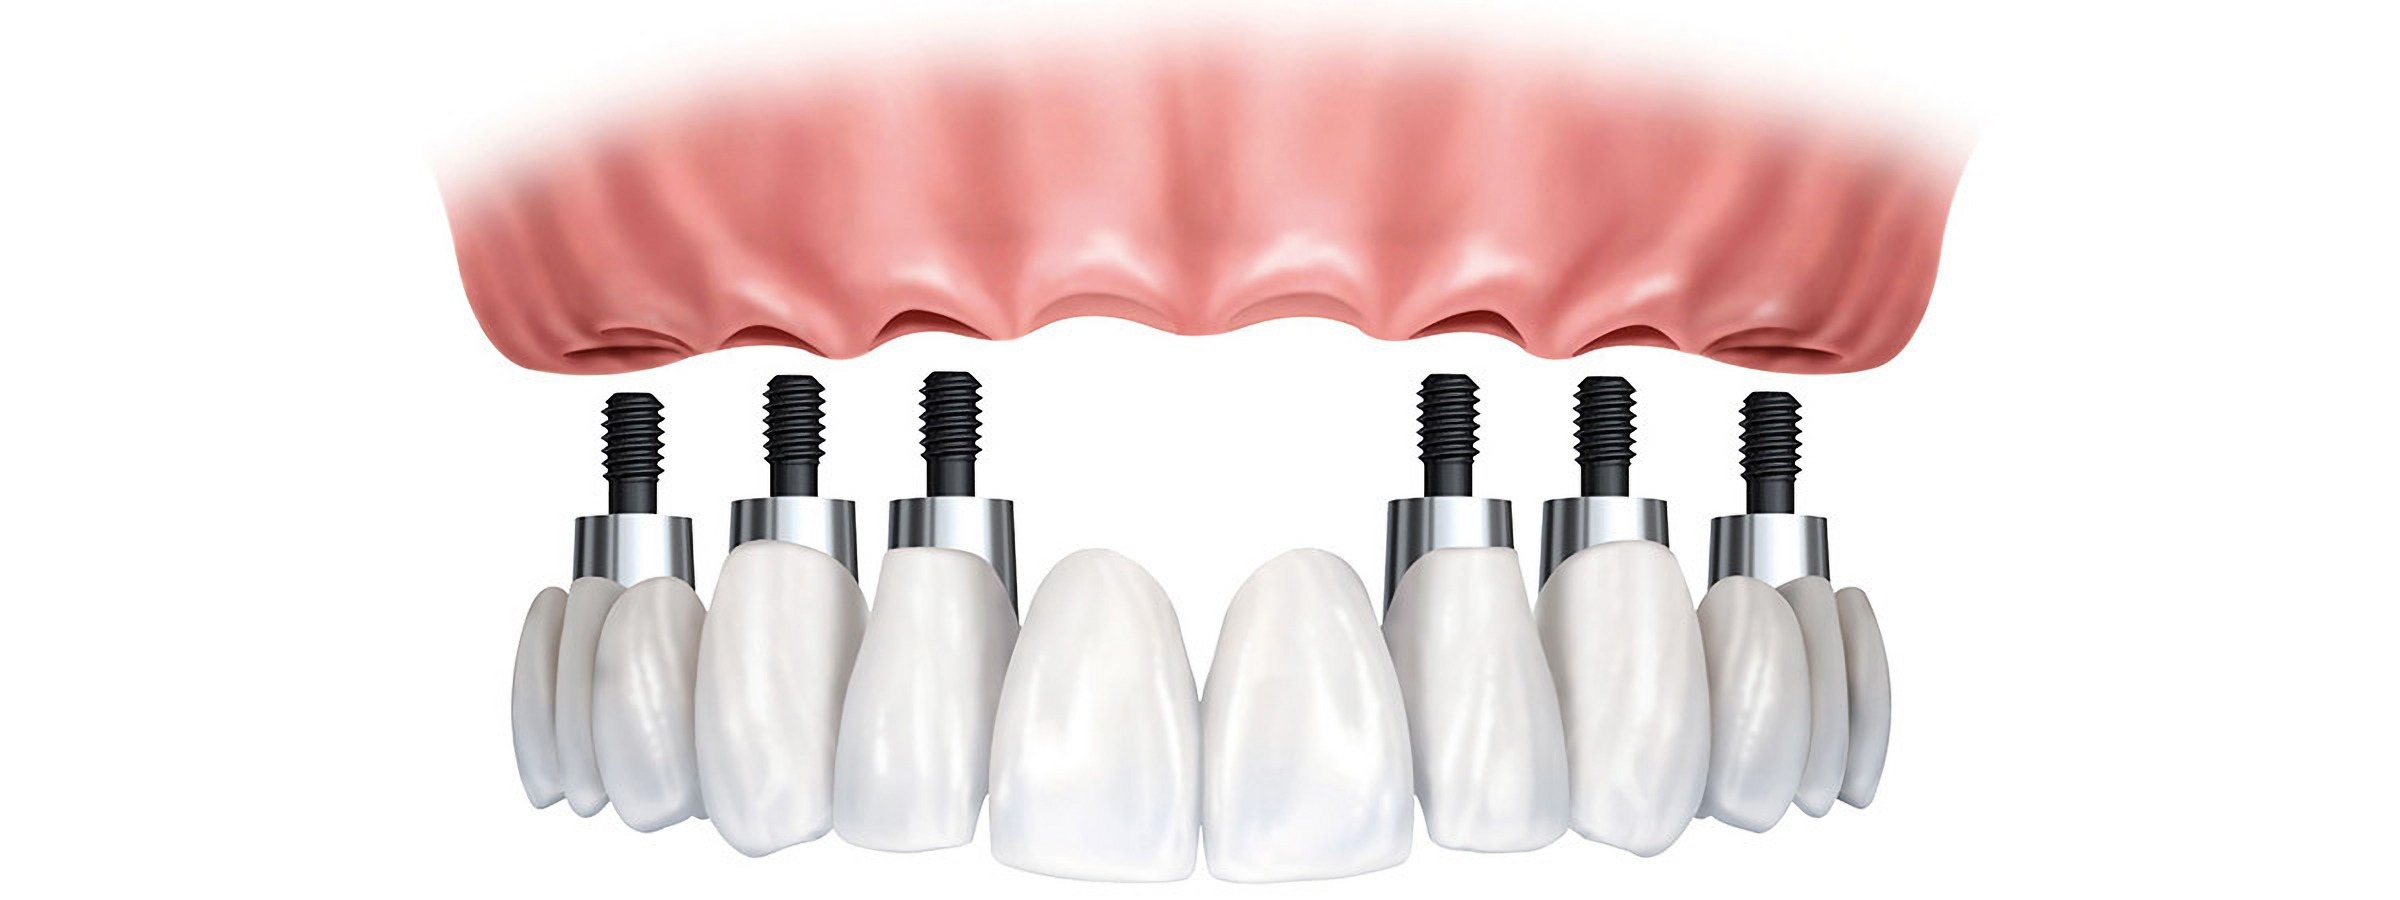 Uzyskanie implantów dentystycznych w Turcji